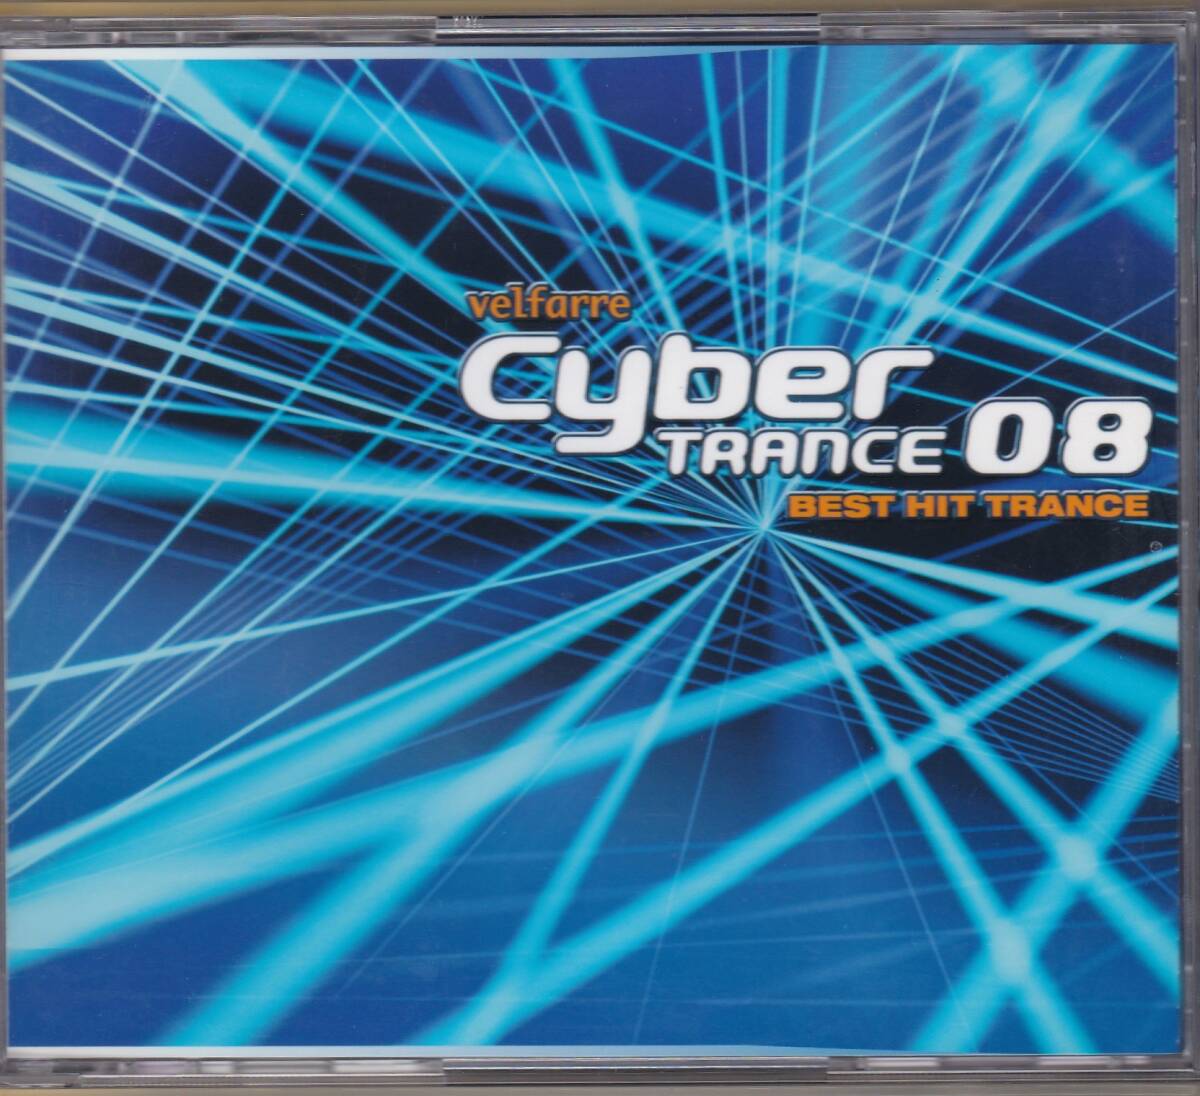 ヴェルファーレ サイバートランス08-ベスト・ヒット・トランス velfarre Cyber Trance 08 BEST HIT TRANCE DVD付き の画像1